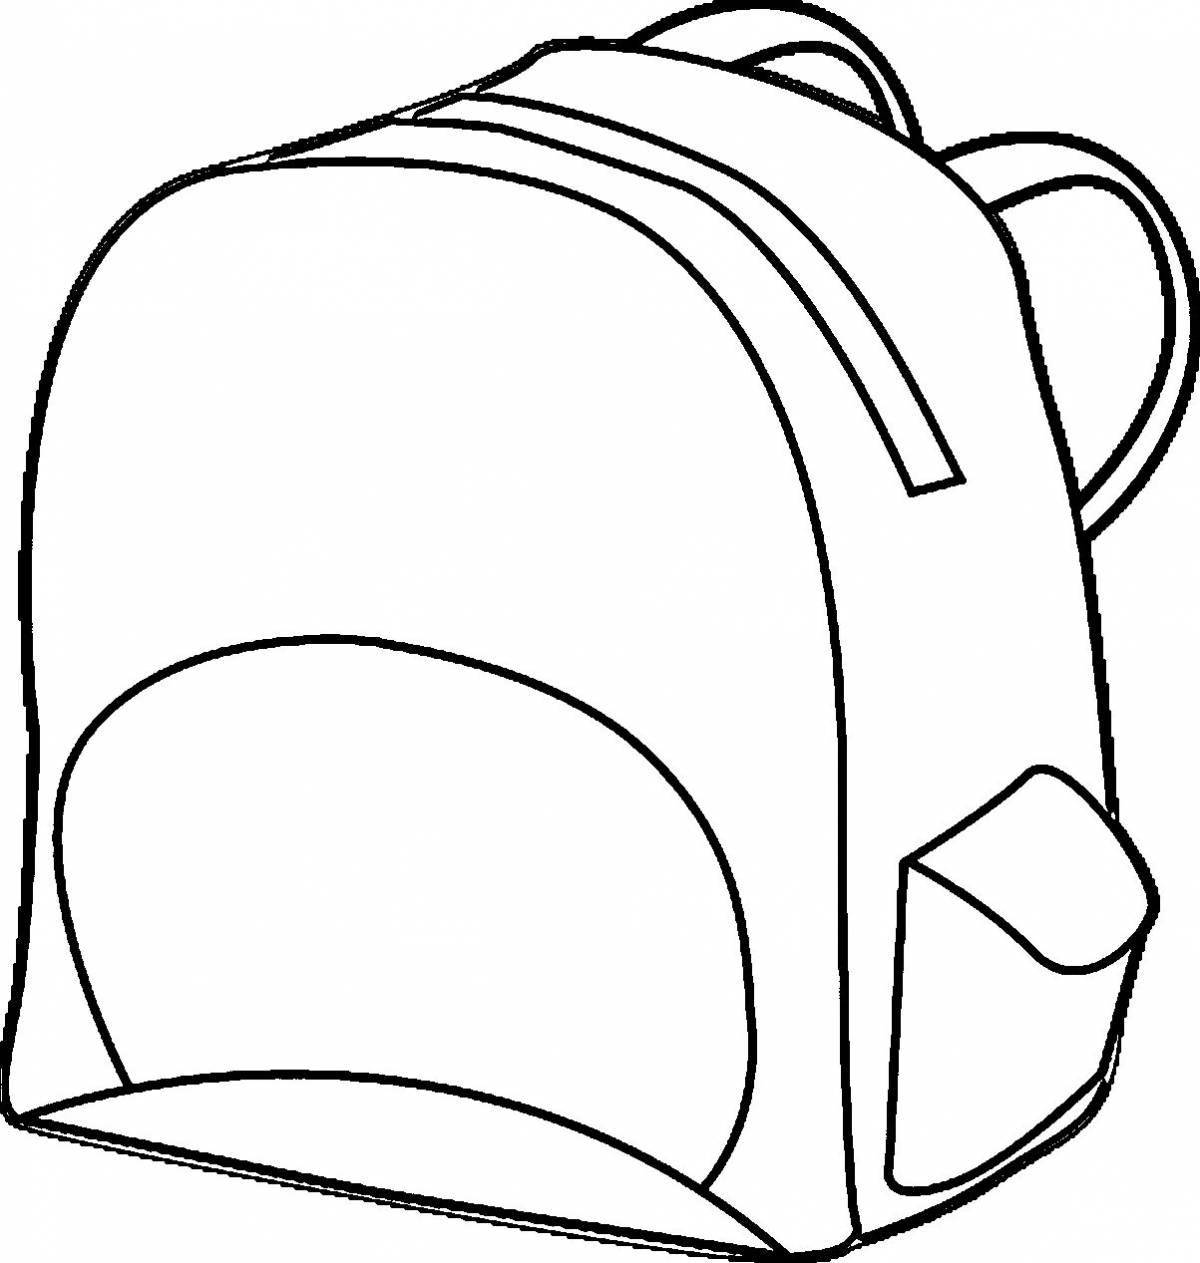 Coloring page cute school bag